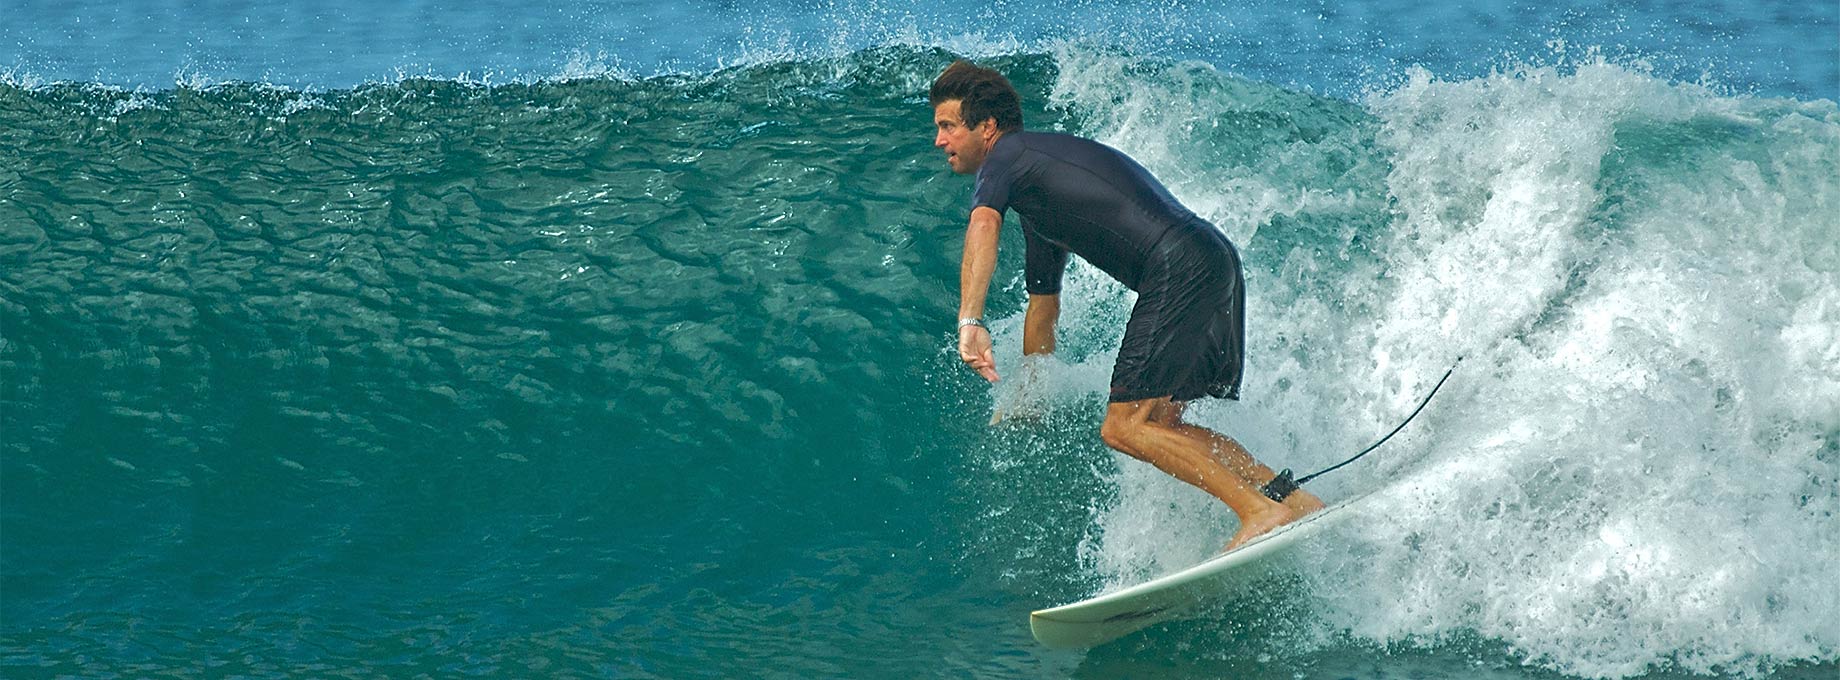 Ken Whalen Surfing